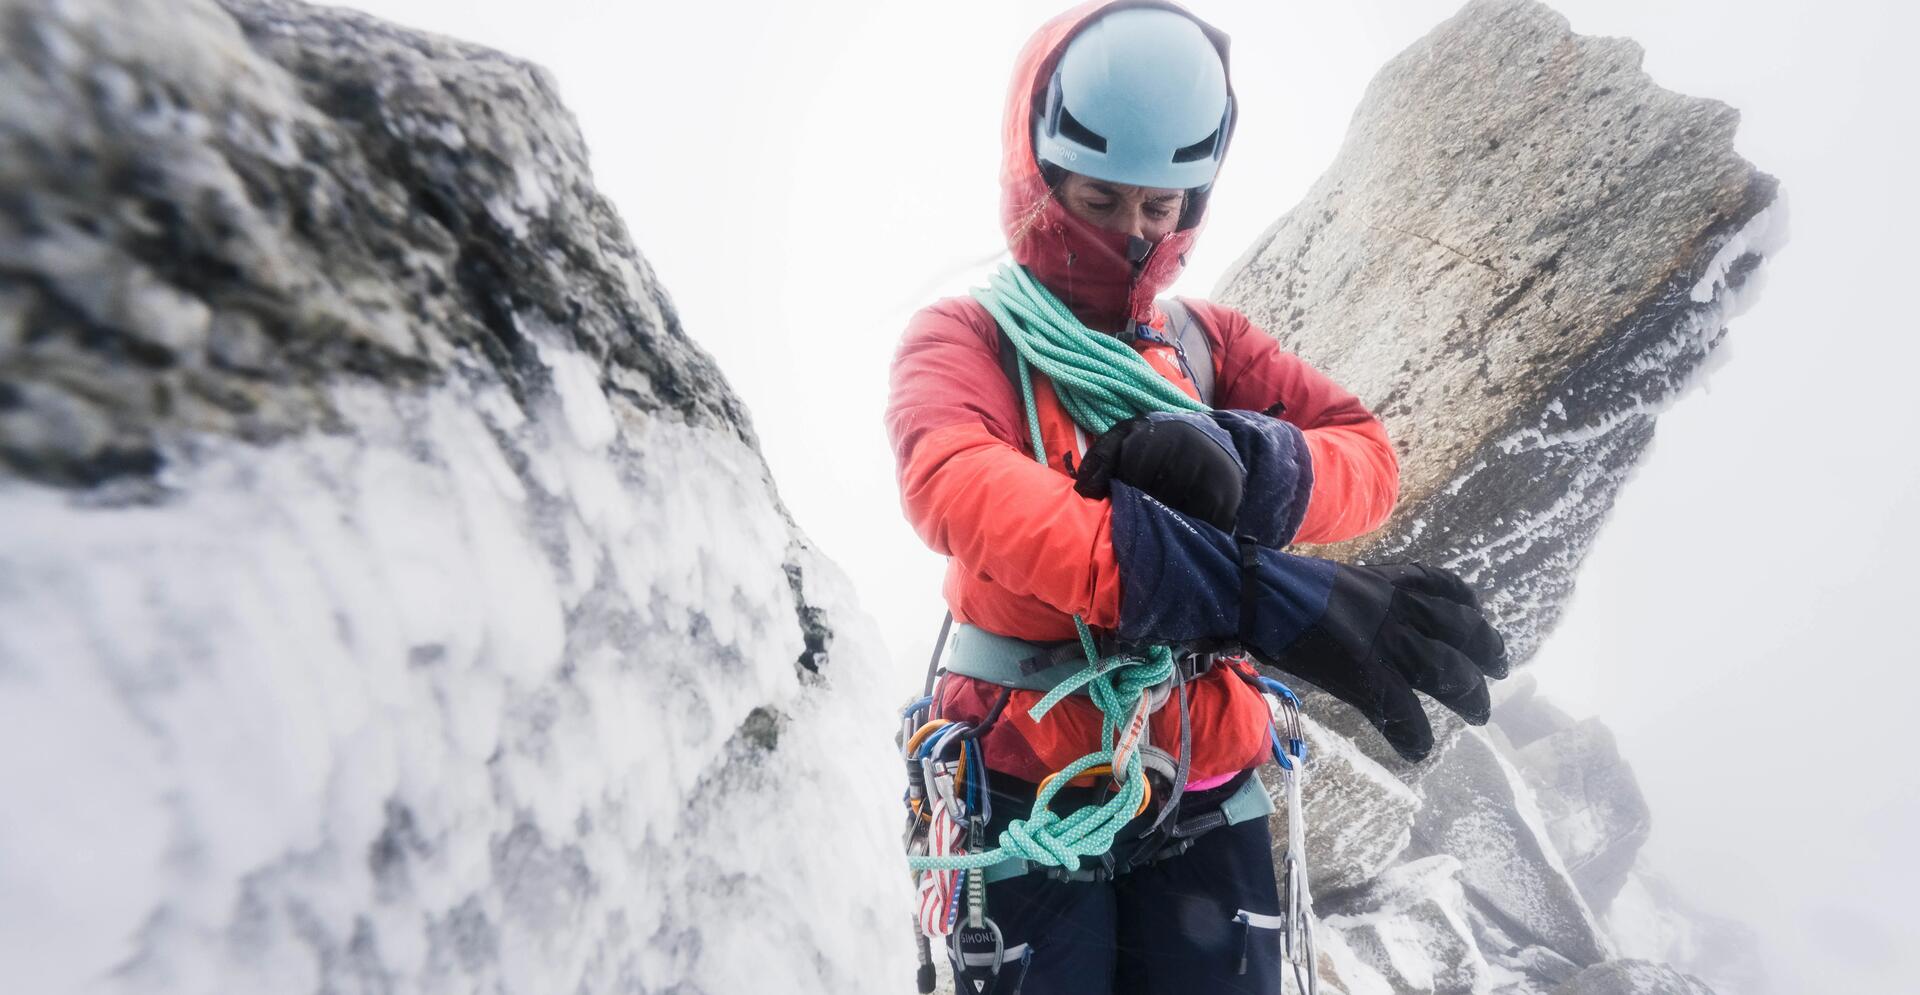 kobieta w stroju alpinistycznym z uprzężą nakładająca rękawiczki